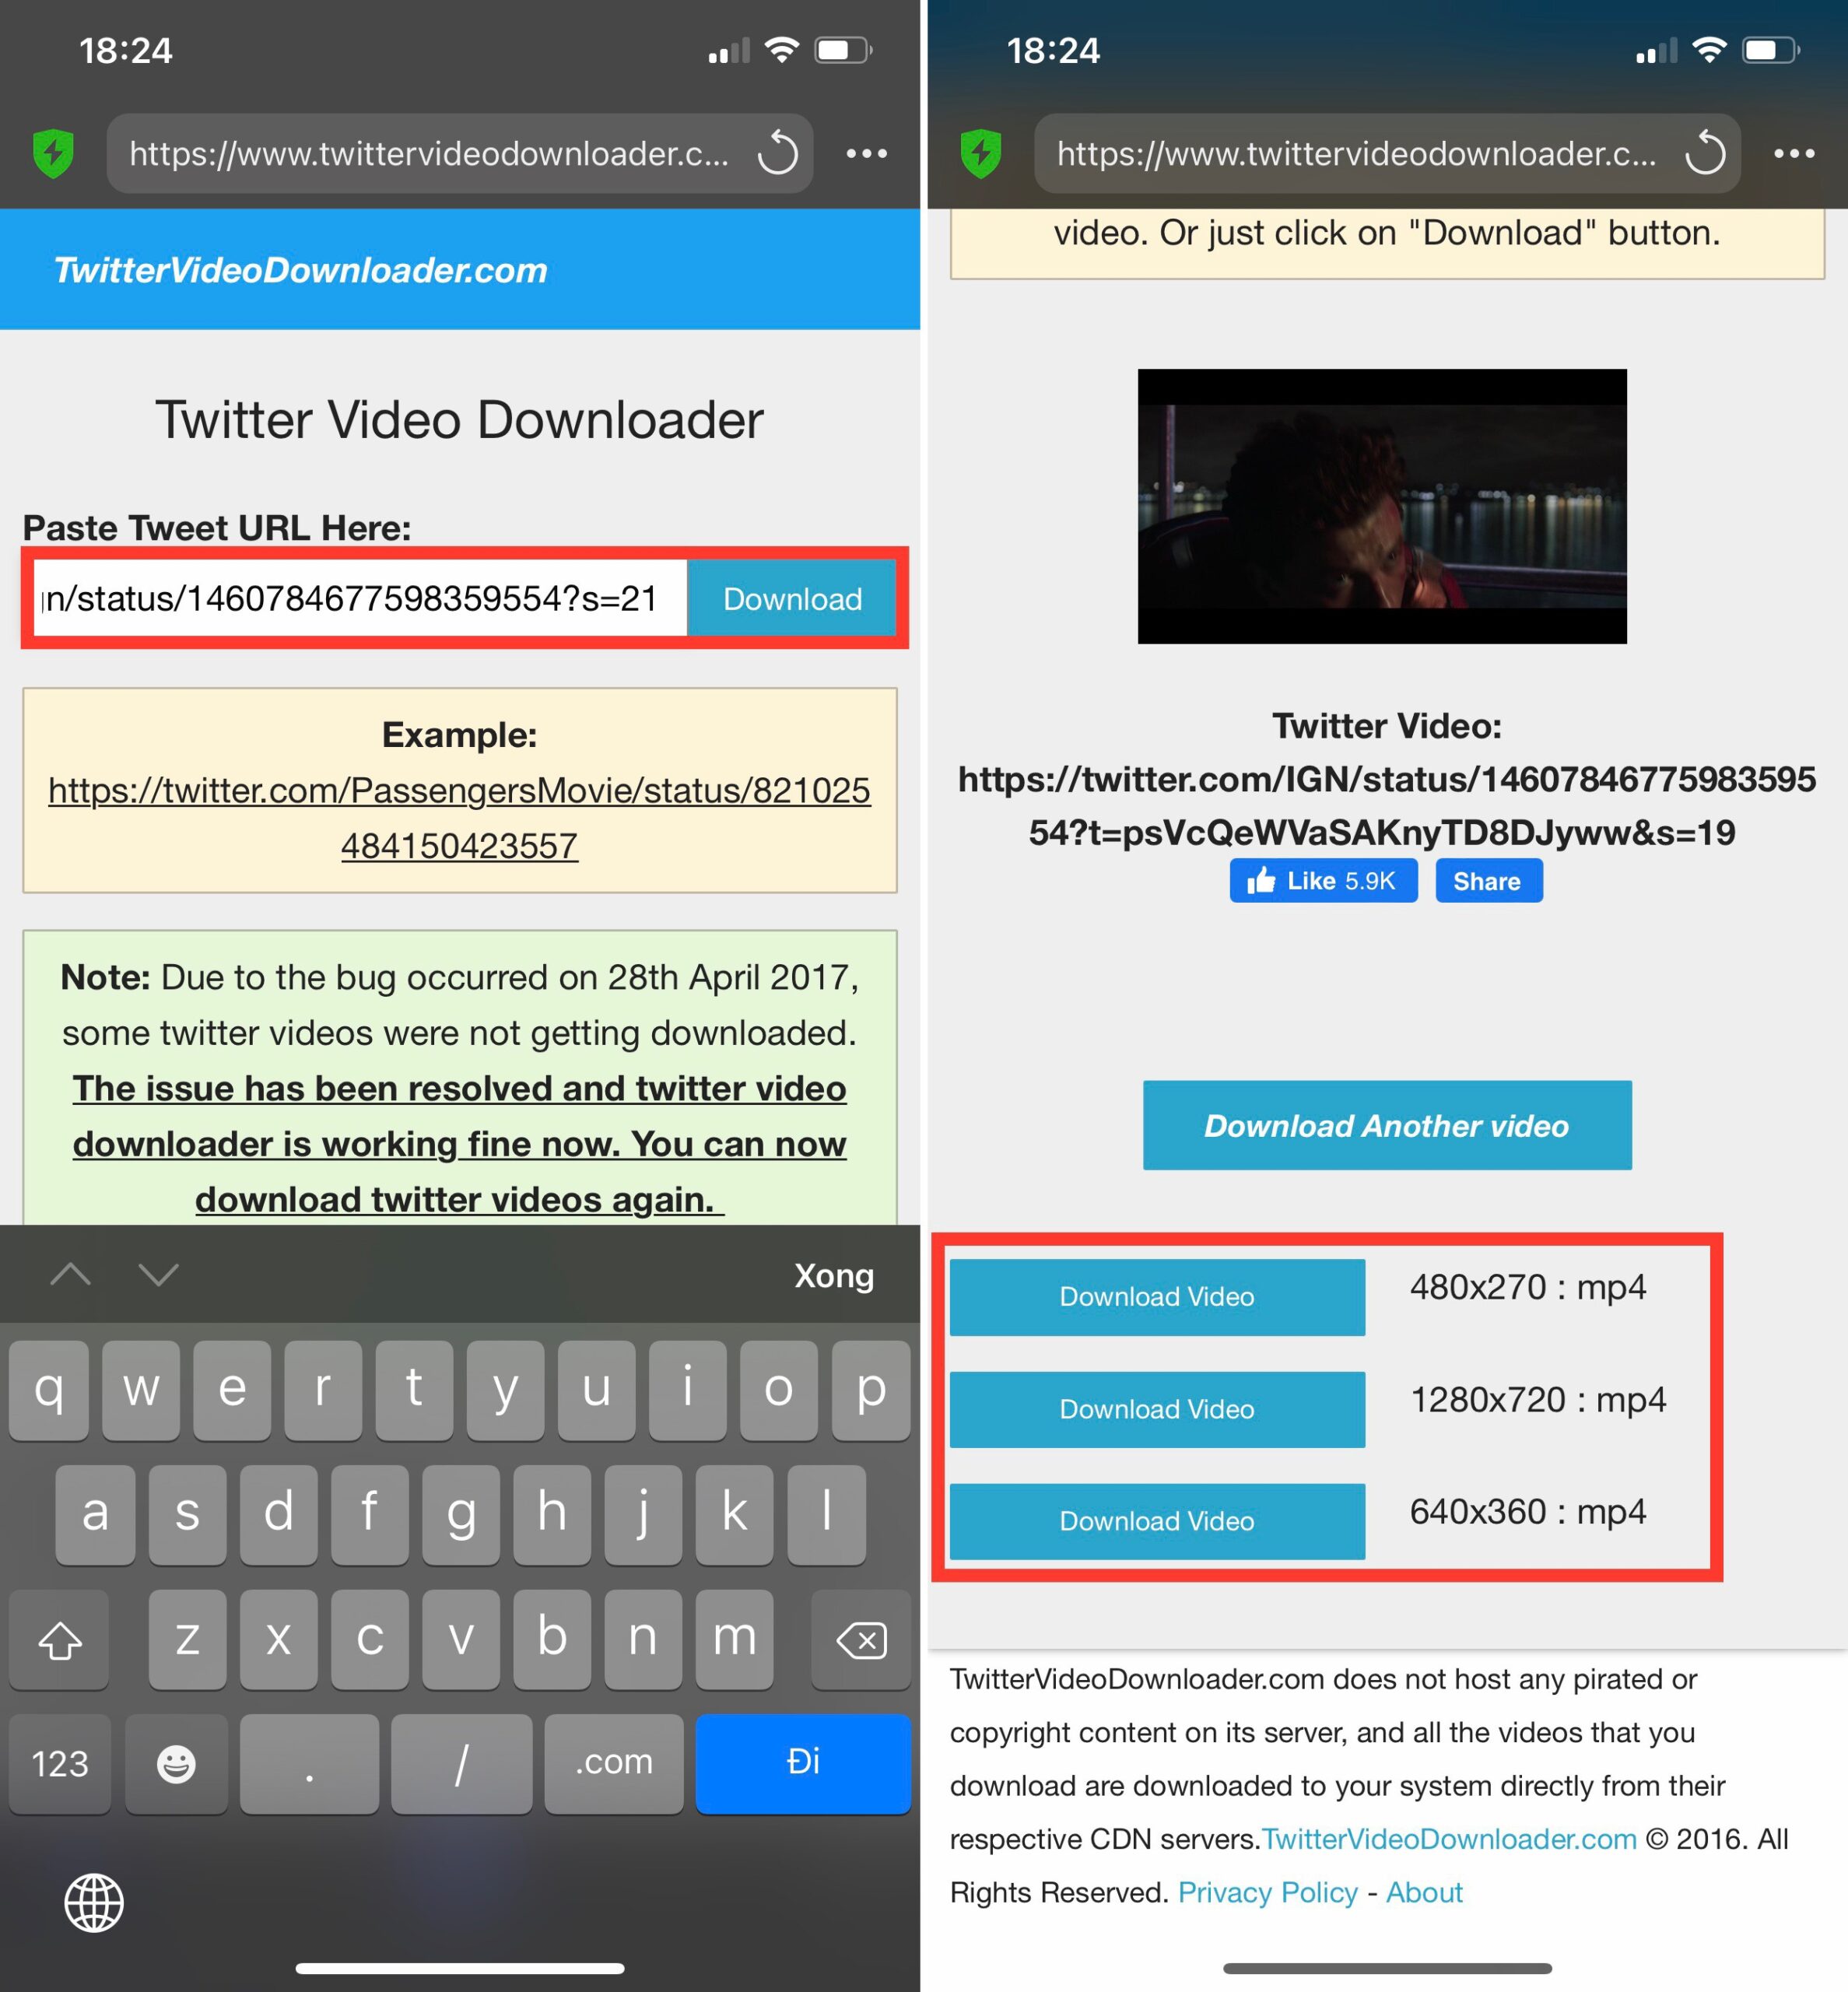 Hướng dẫn các cách tải video twitter về iPhone Android và máy tính đơn giản